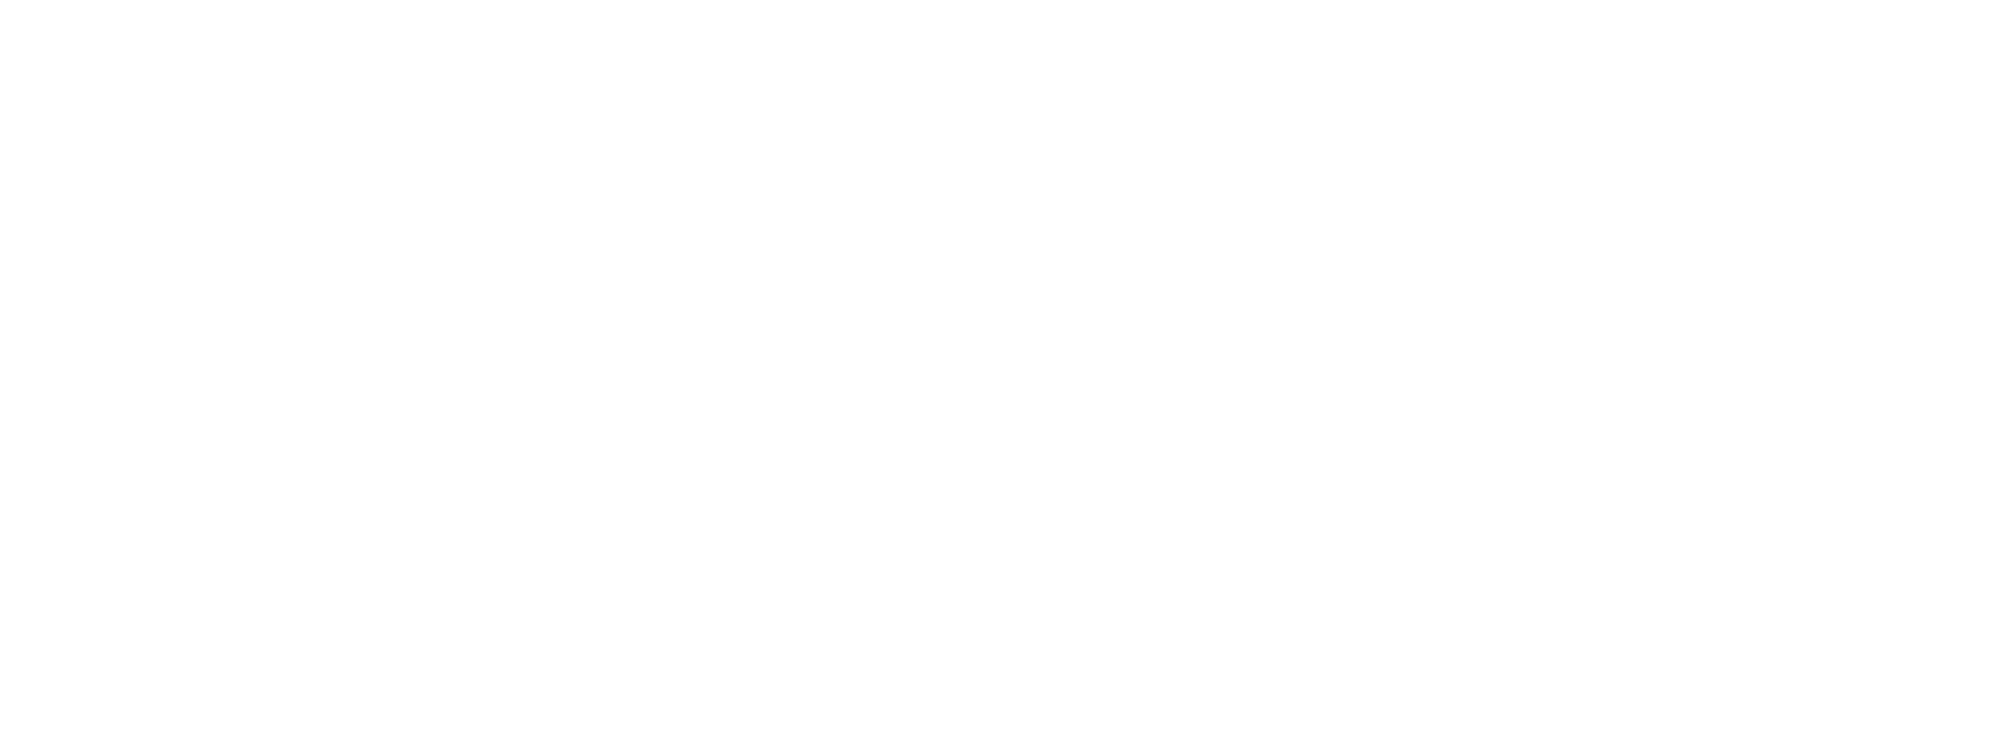 driven-company-logo